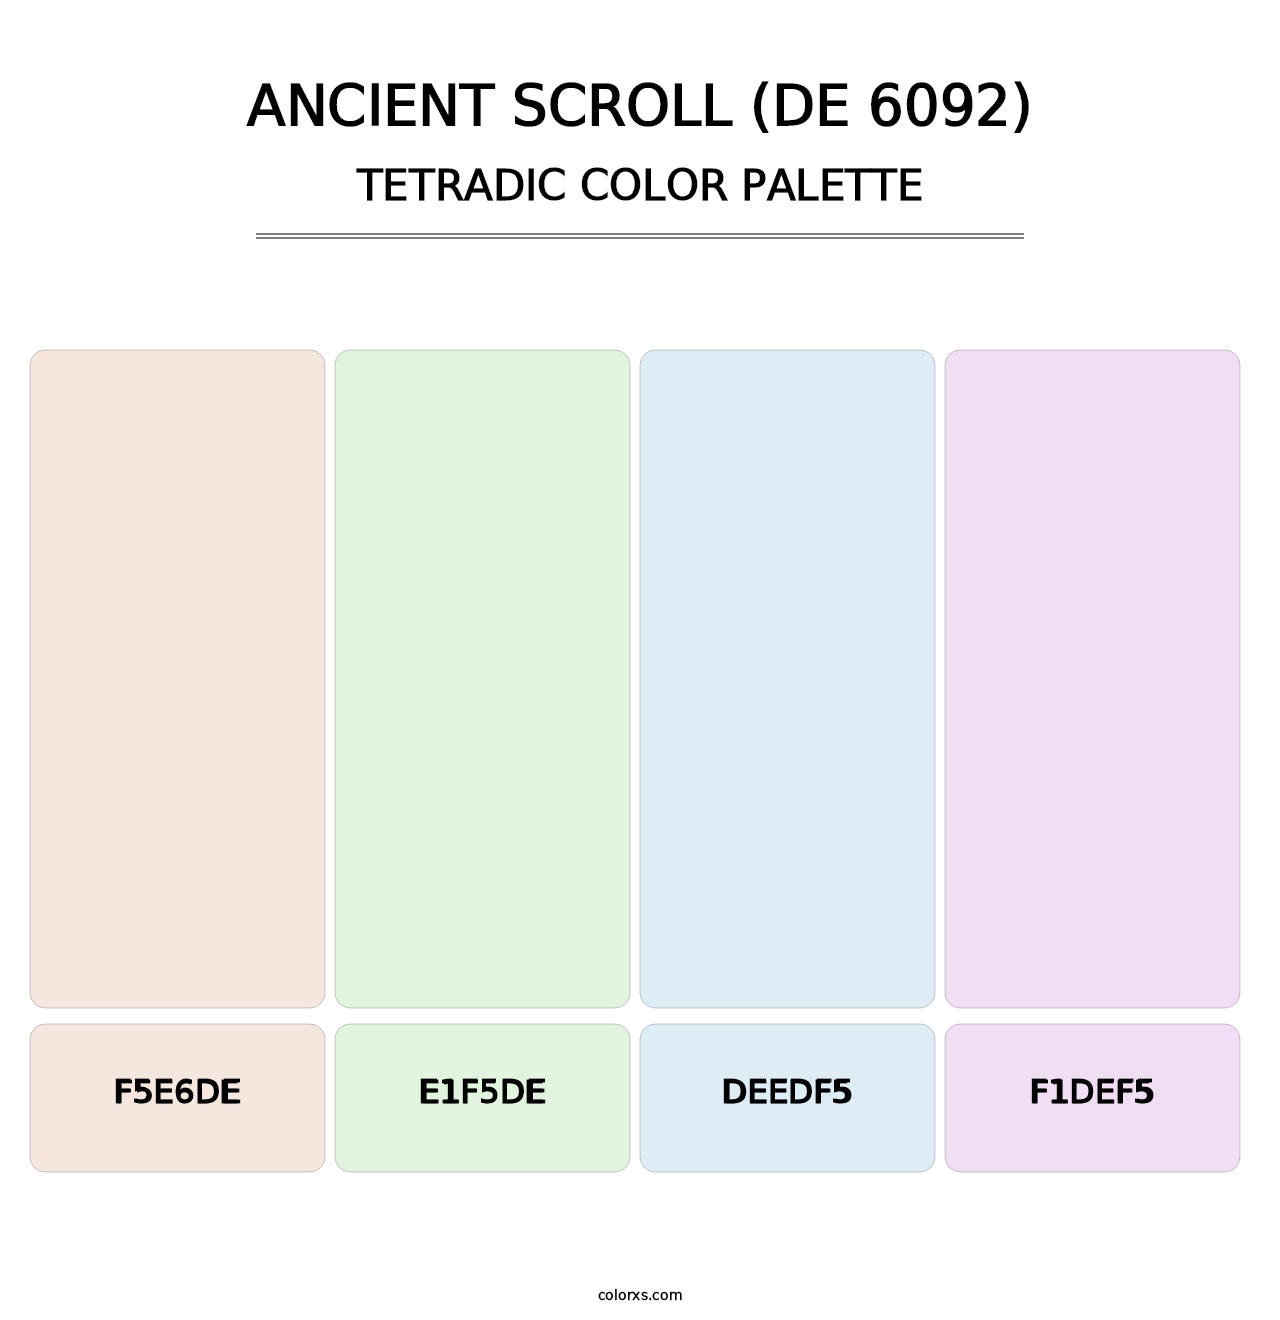 Ancient Scroll (DE 6092) - Tetradic Color Palette